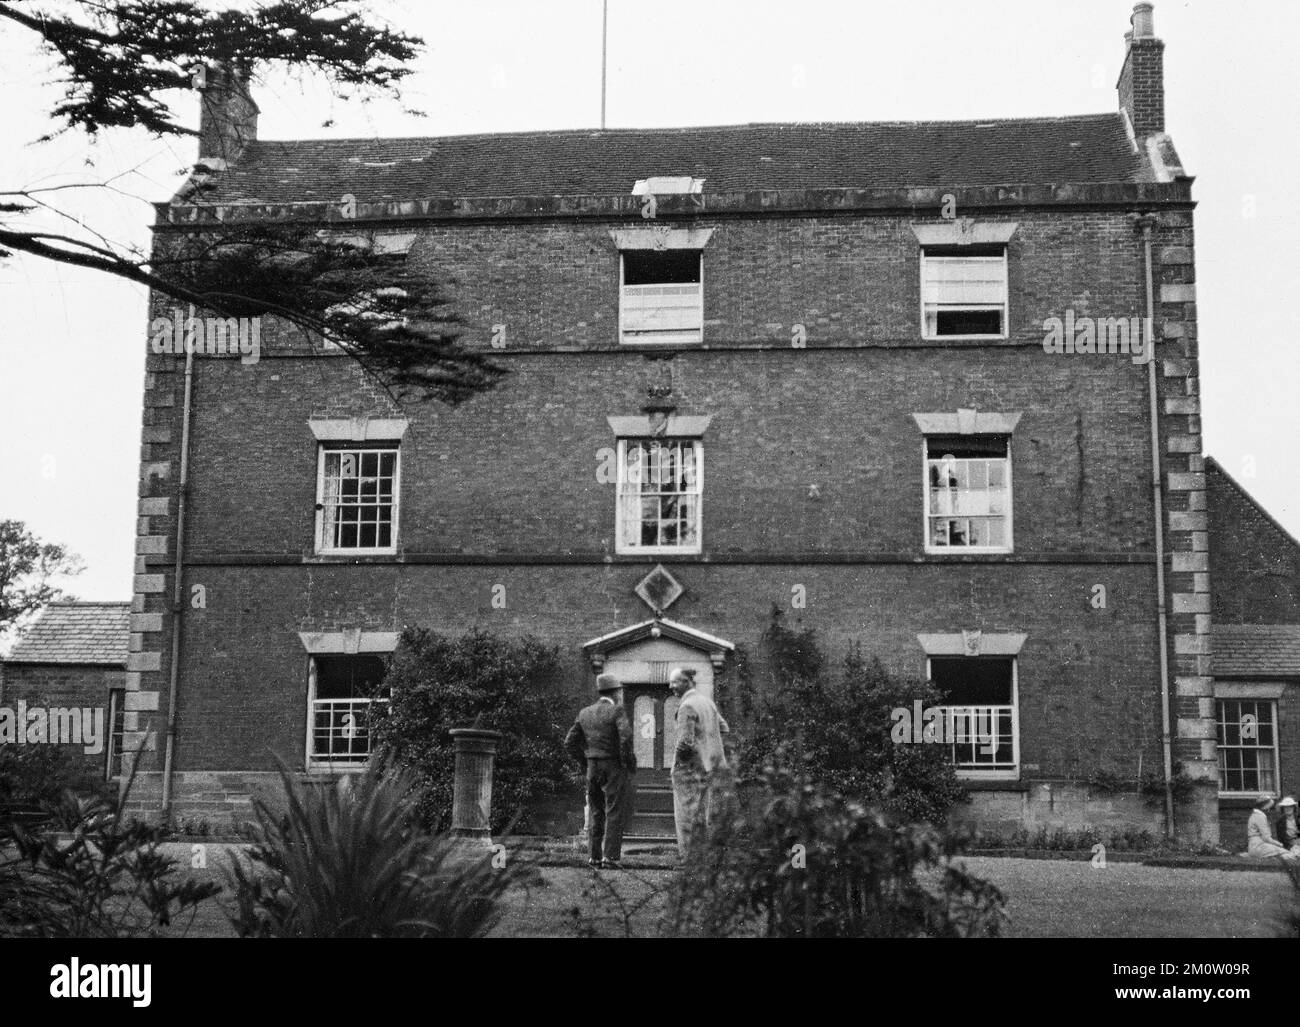 Photographie ancienne du début du 20th siècle montrant le Waingroves Hall à Ripley, Derbyshire, Angleterre. Banque D'Images